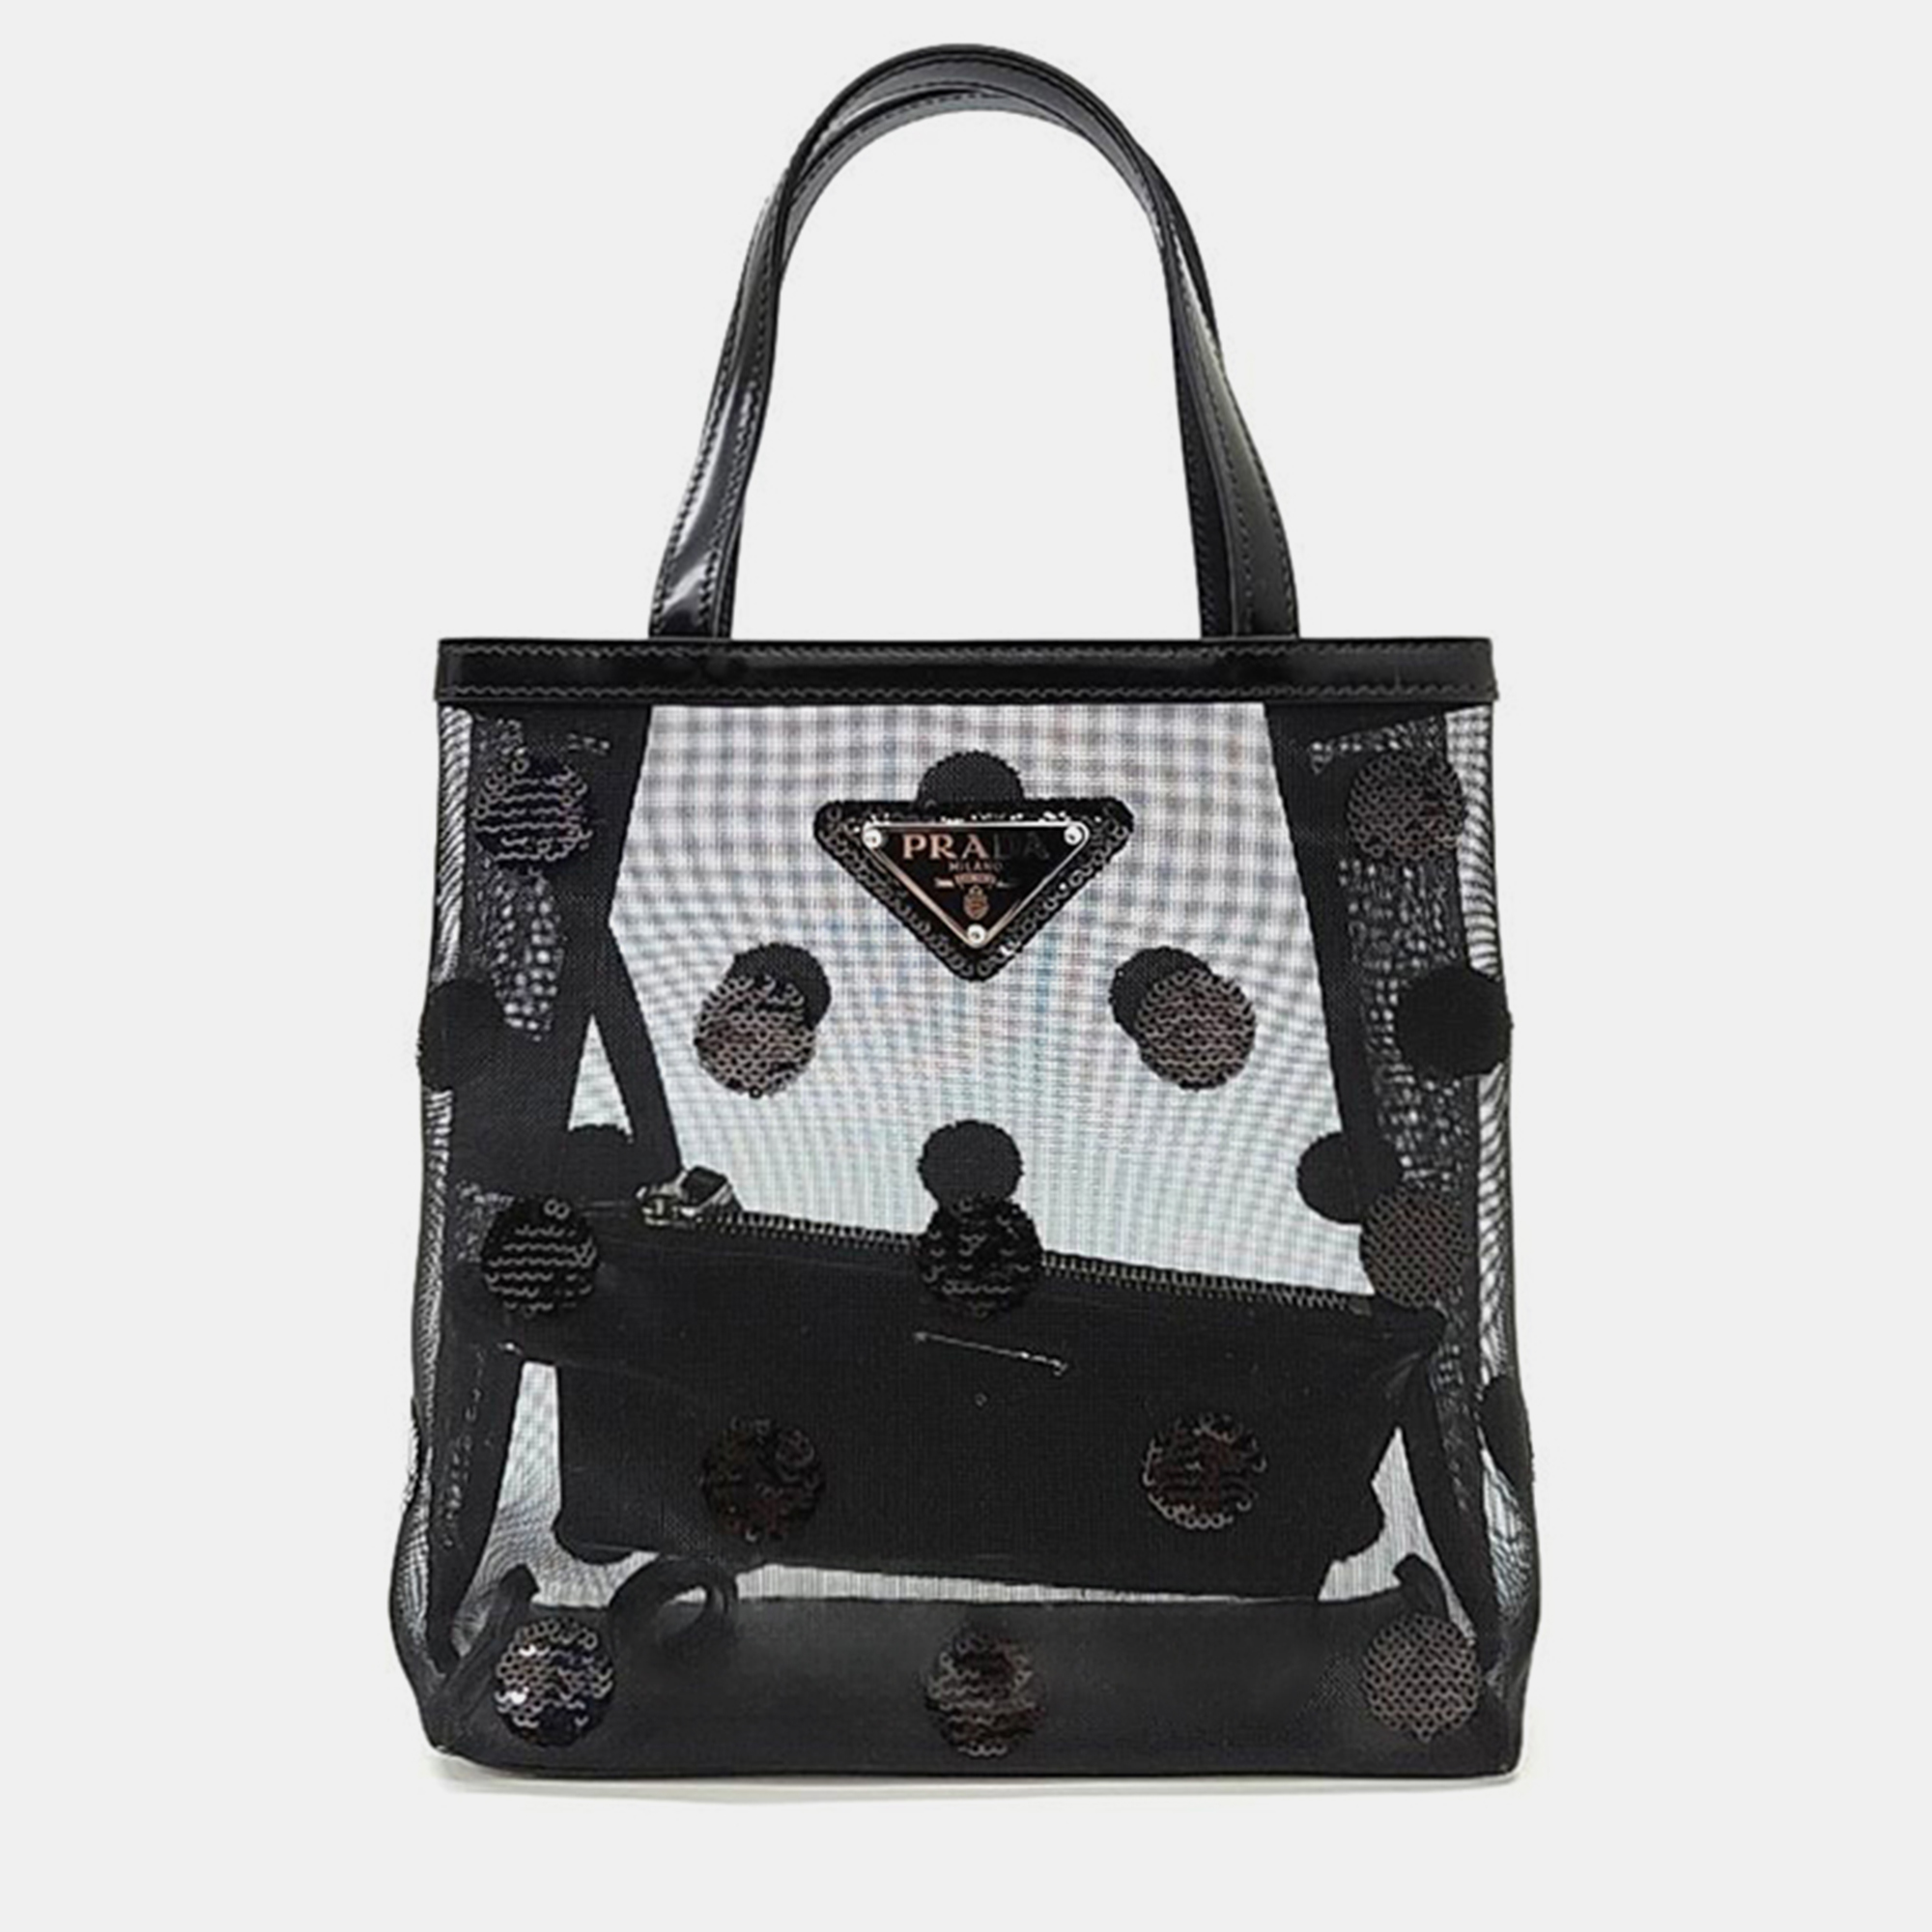 Pre-owned Prada Black Sequin Mesh Tote Bag